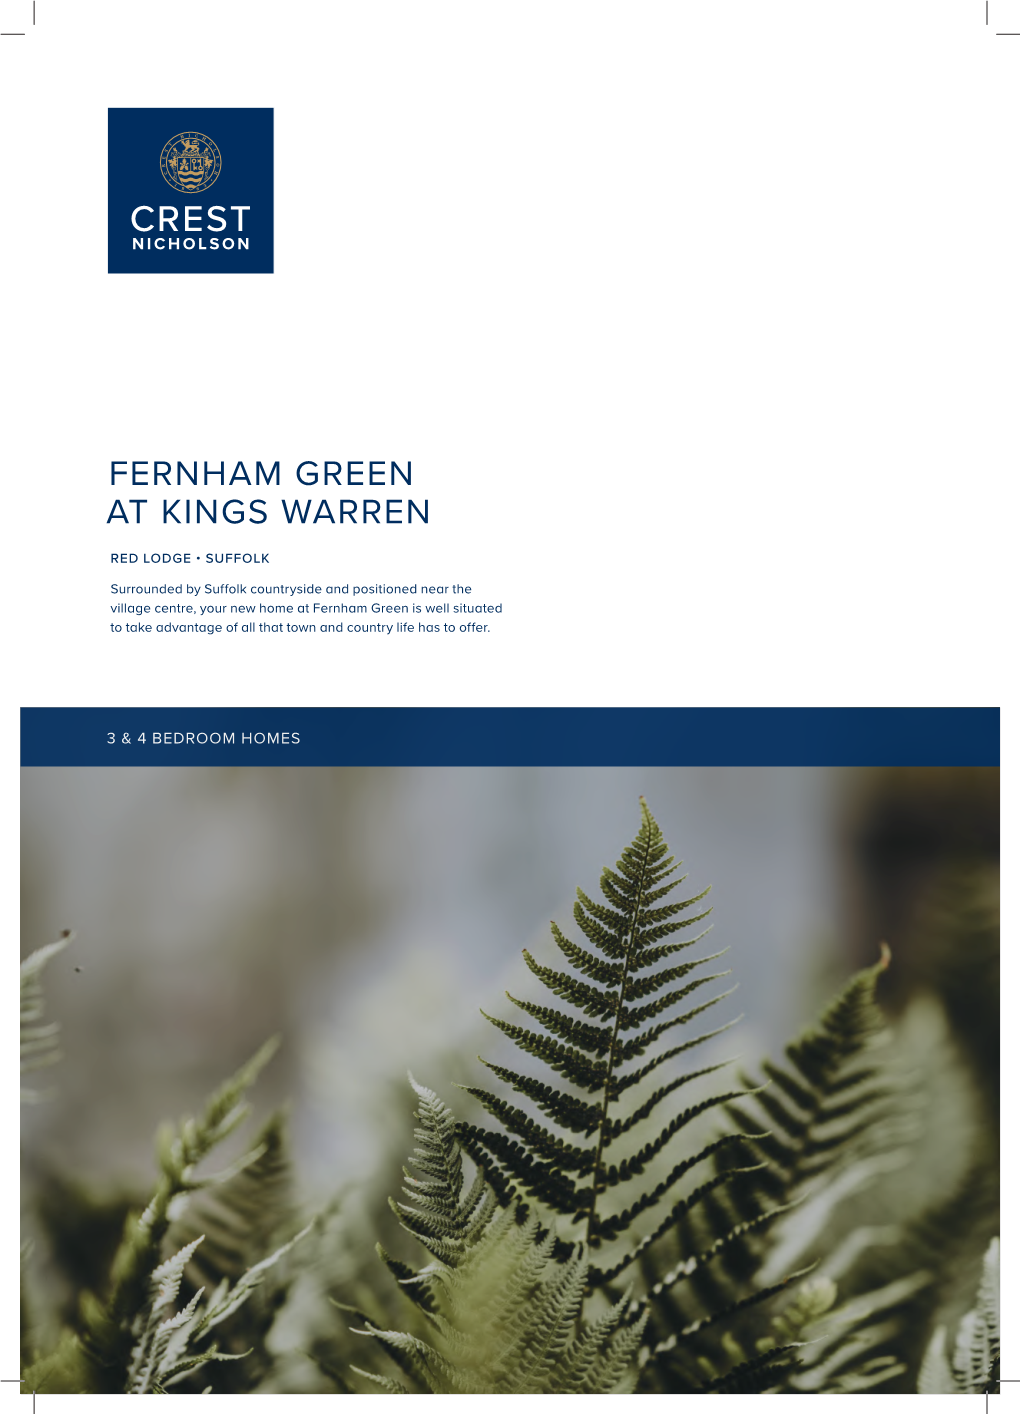 Fernham Green at Kings Warren